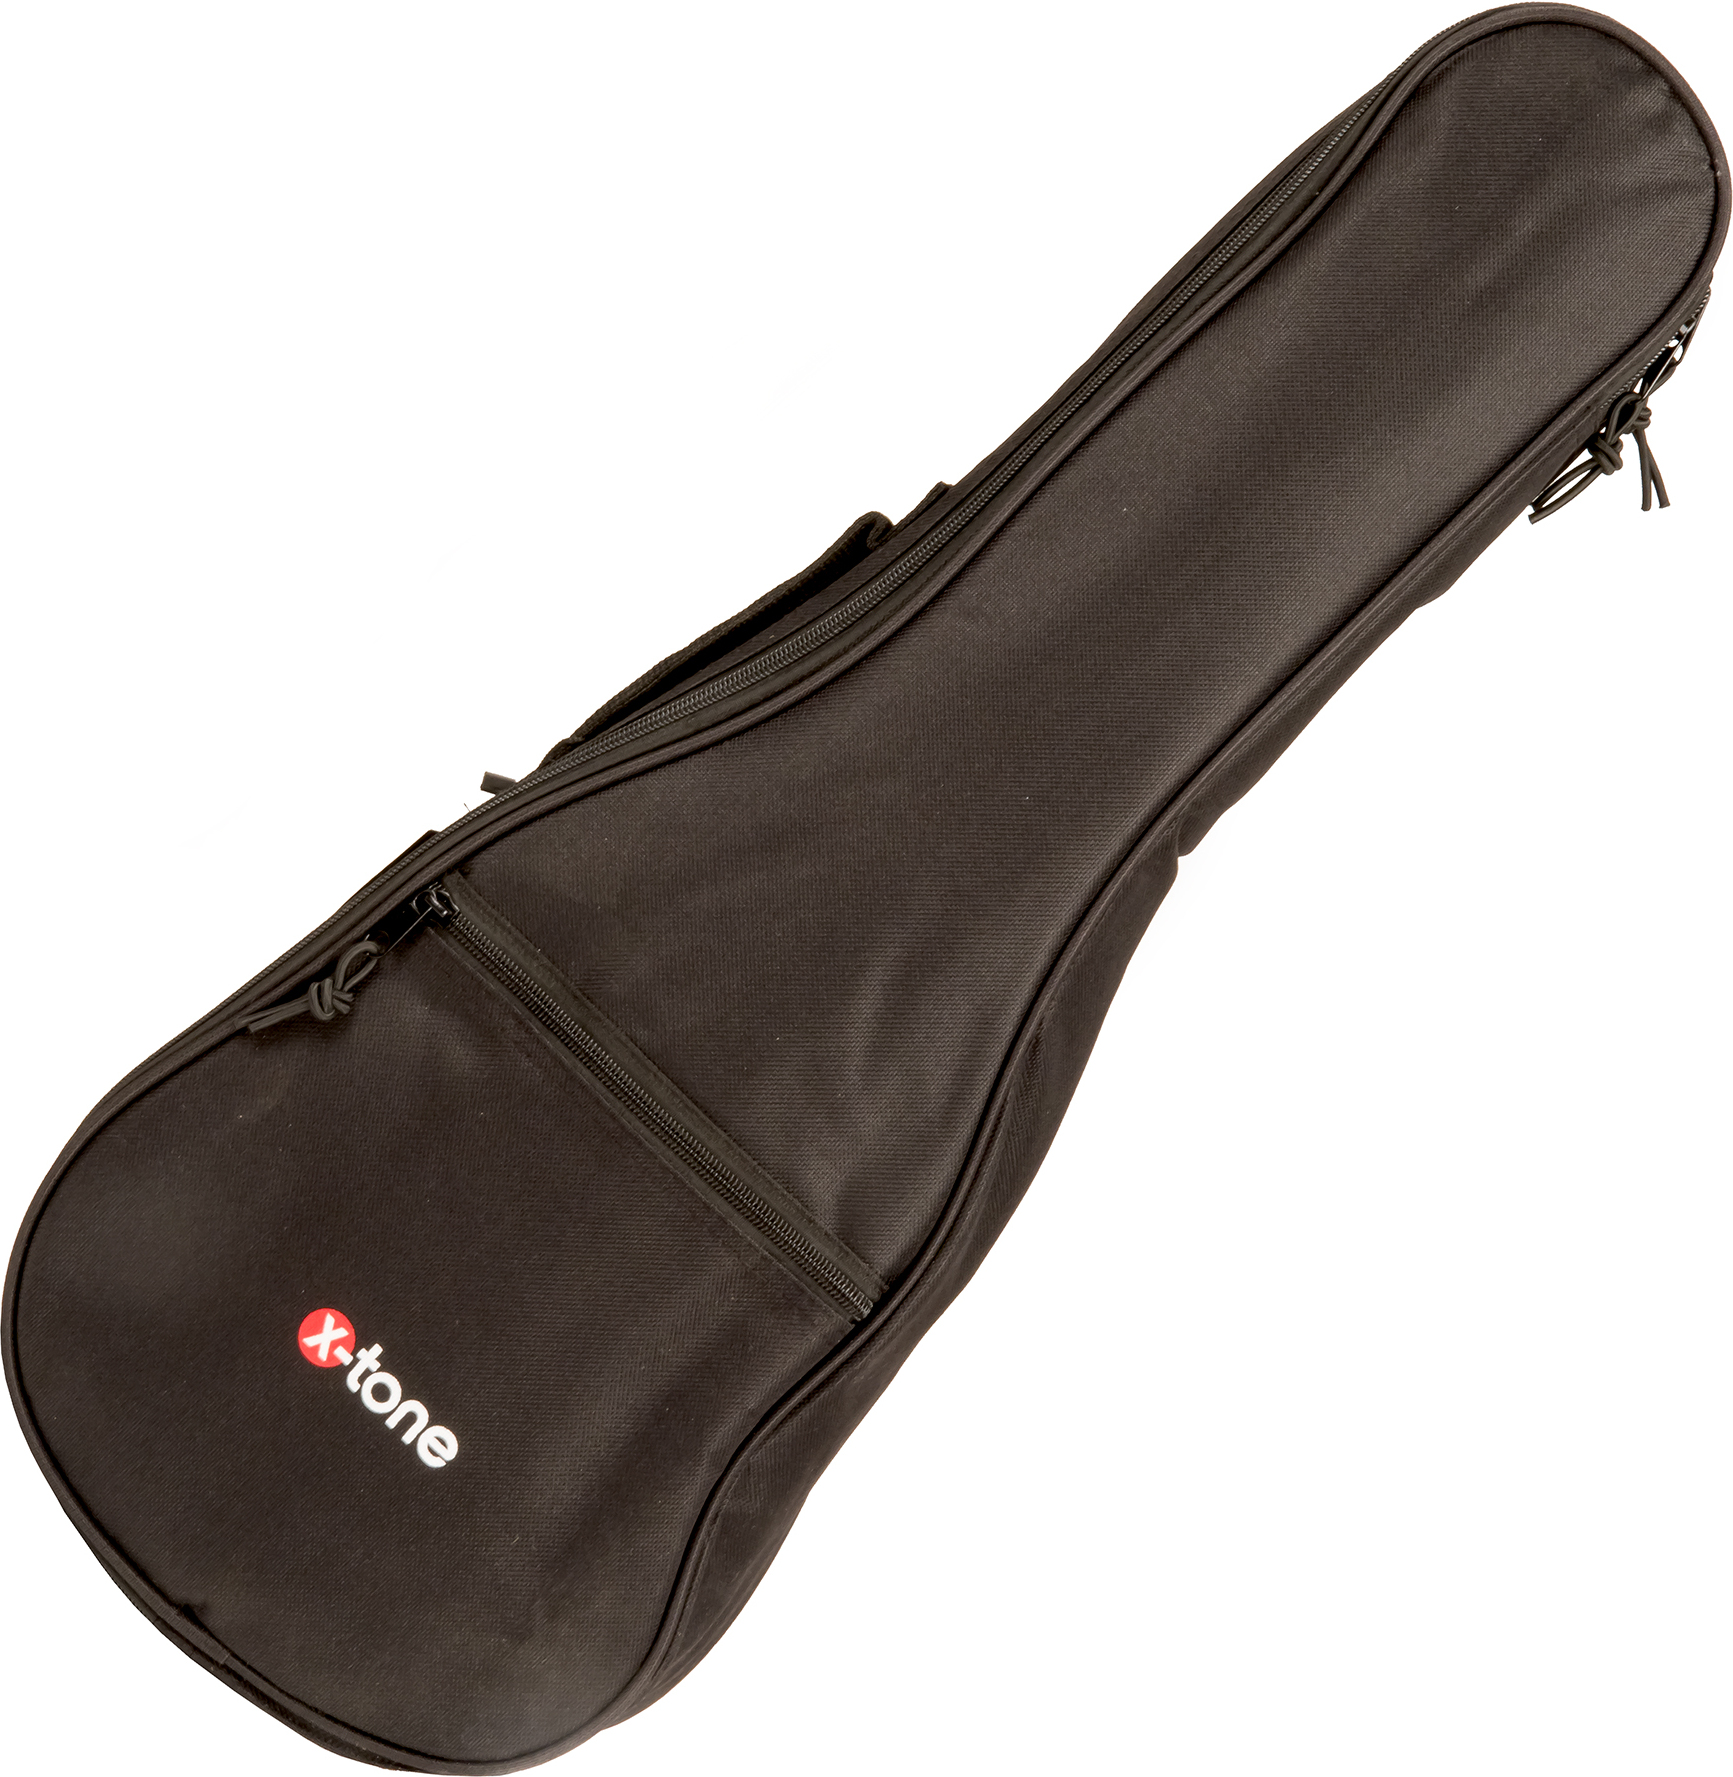 X-tone 2020 Ukulele Soprano Bag 3mm - Funda para ukulele - Main picture